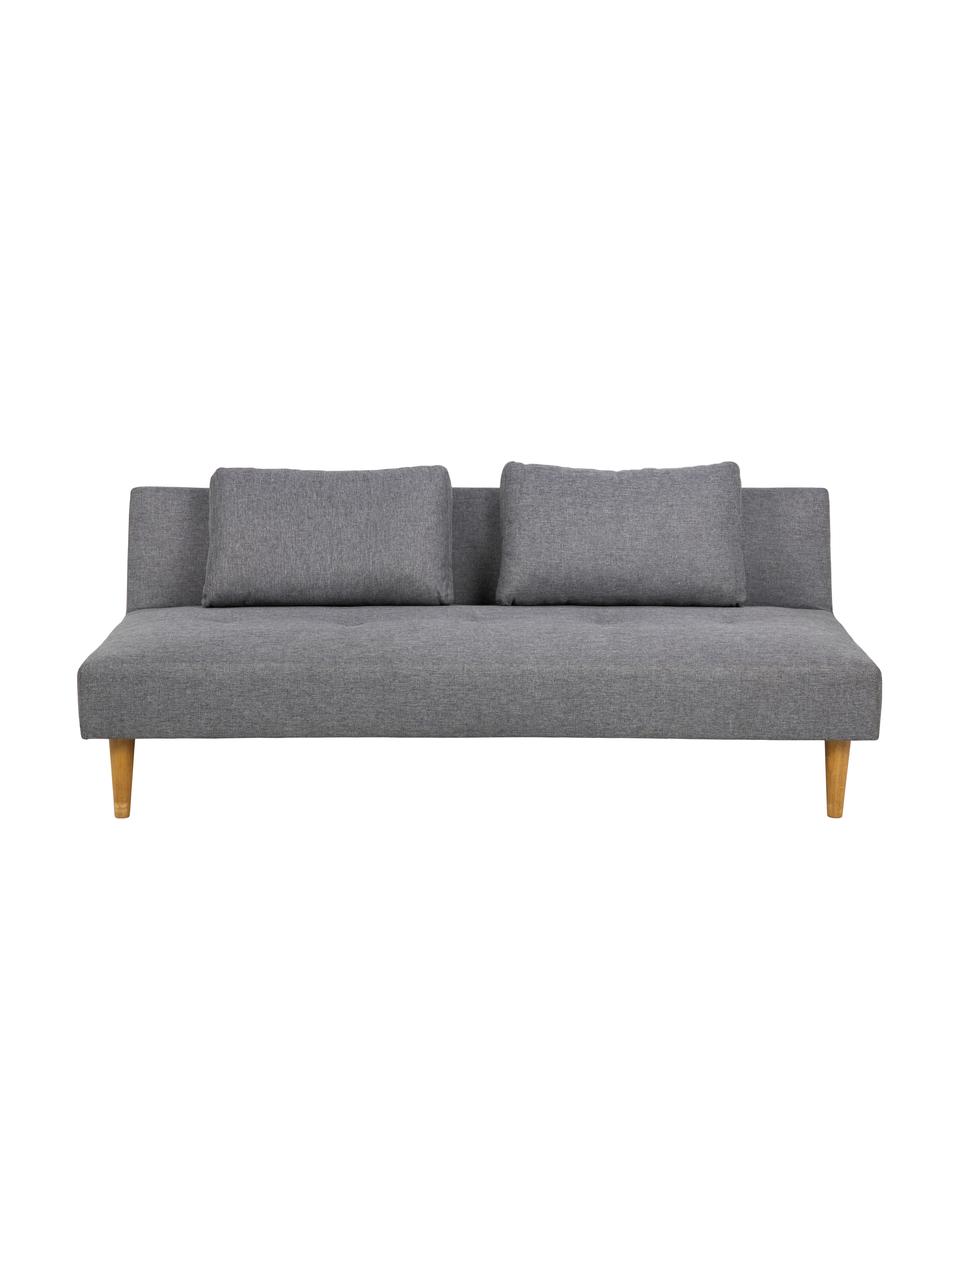 Schlafsofa Lucca (2-Sitzer) in Grau, Bezug: 100% Polyester Der hochwe, Füße: Gummibaum, Grau, B 180 x T 86 cm